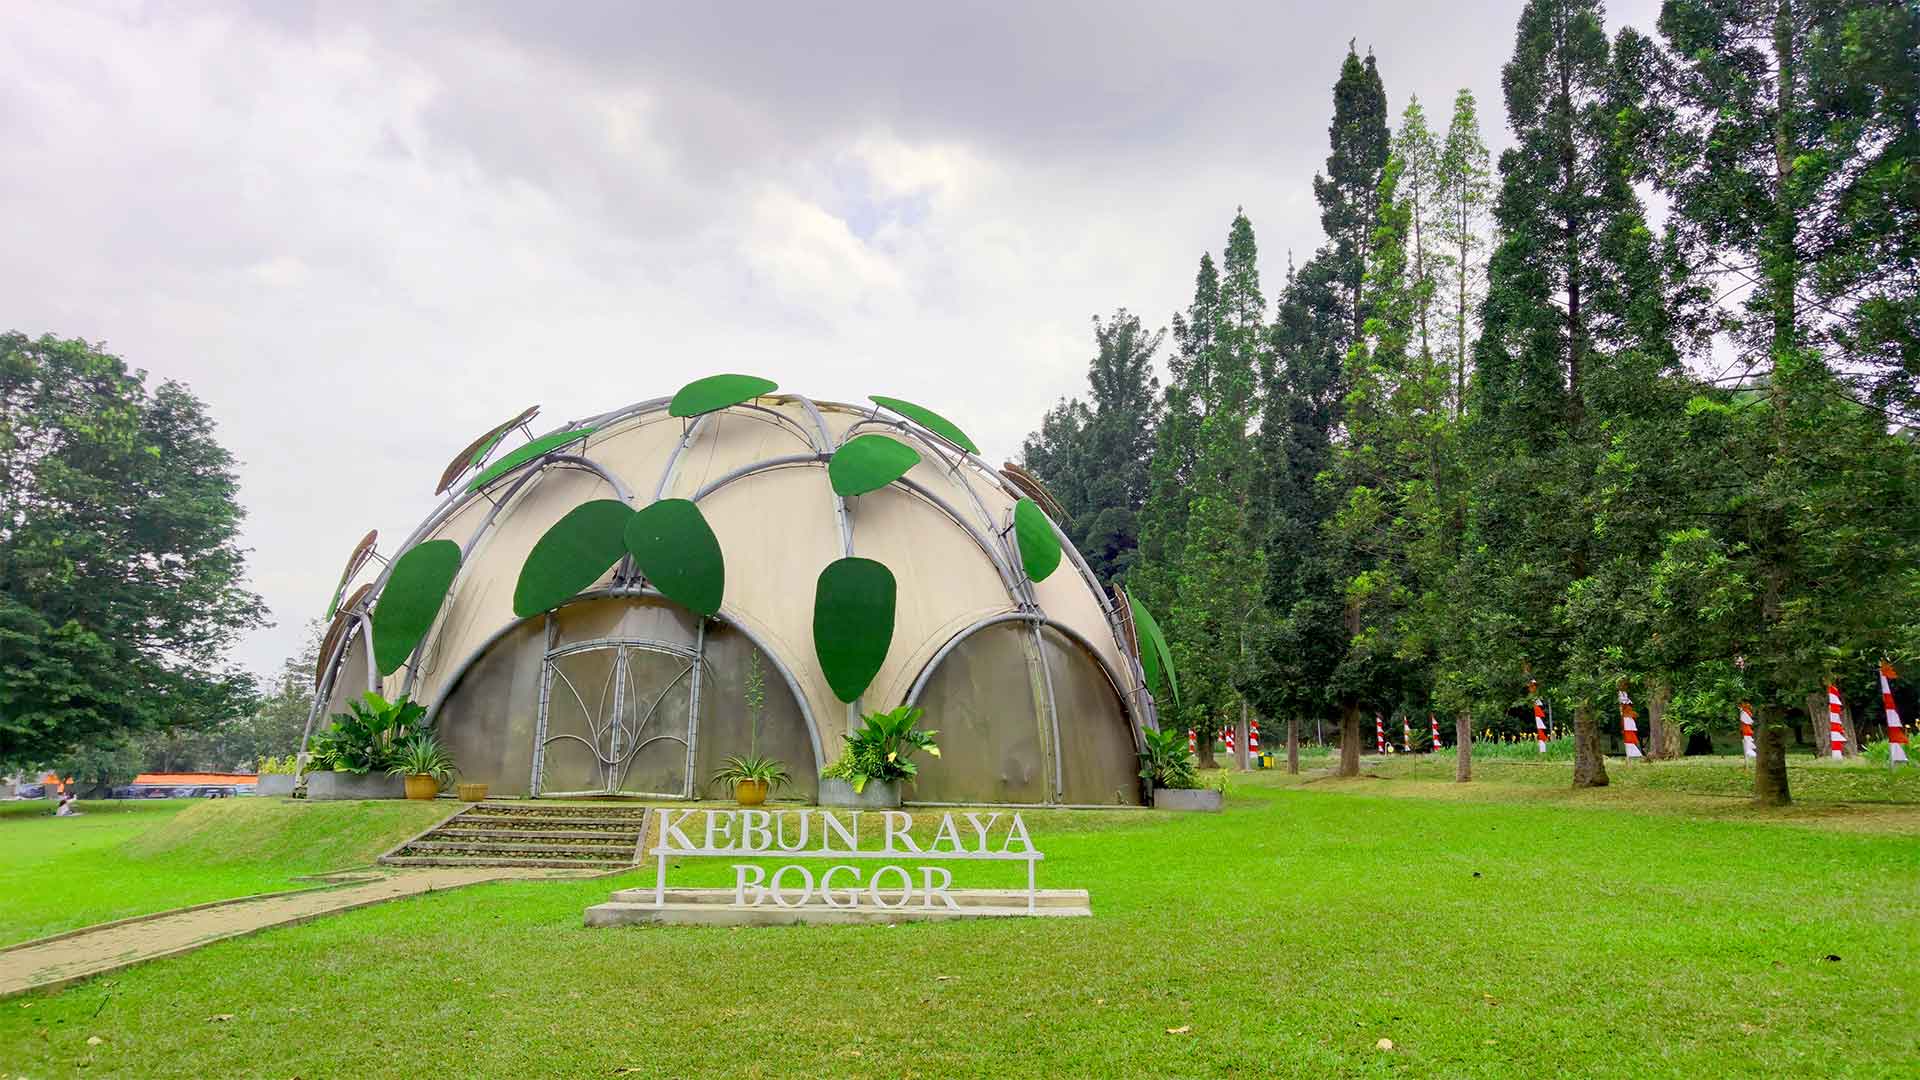 Kebun Raya Bogor, Menjelajahi Dan Belajar Di 5 Kebun Raya Yang Ada Di Indonesia